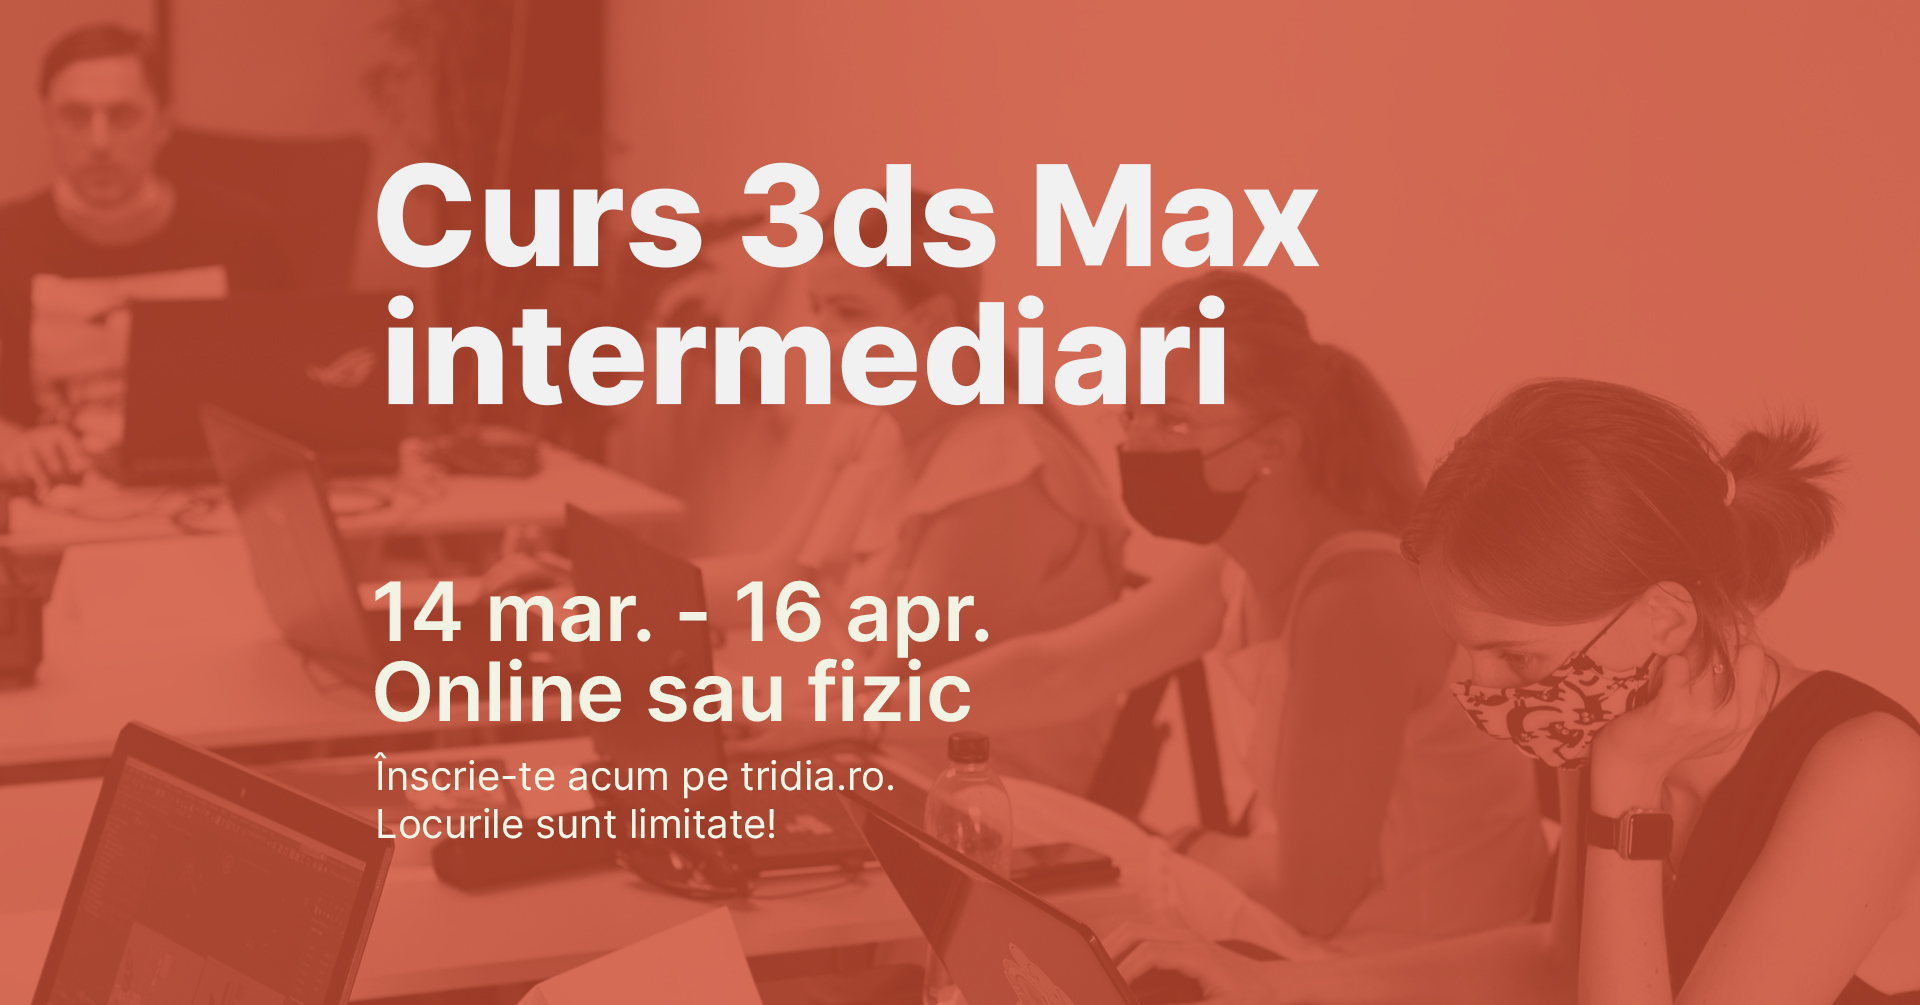 Curs 3ds Max – Intermediari